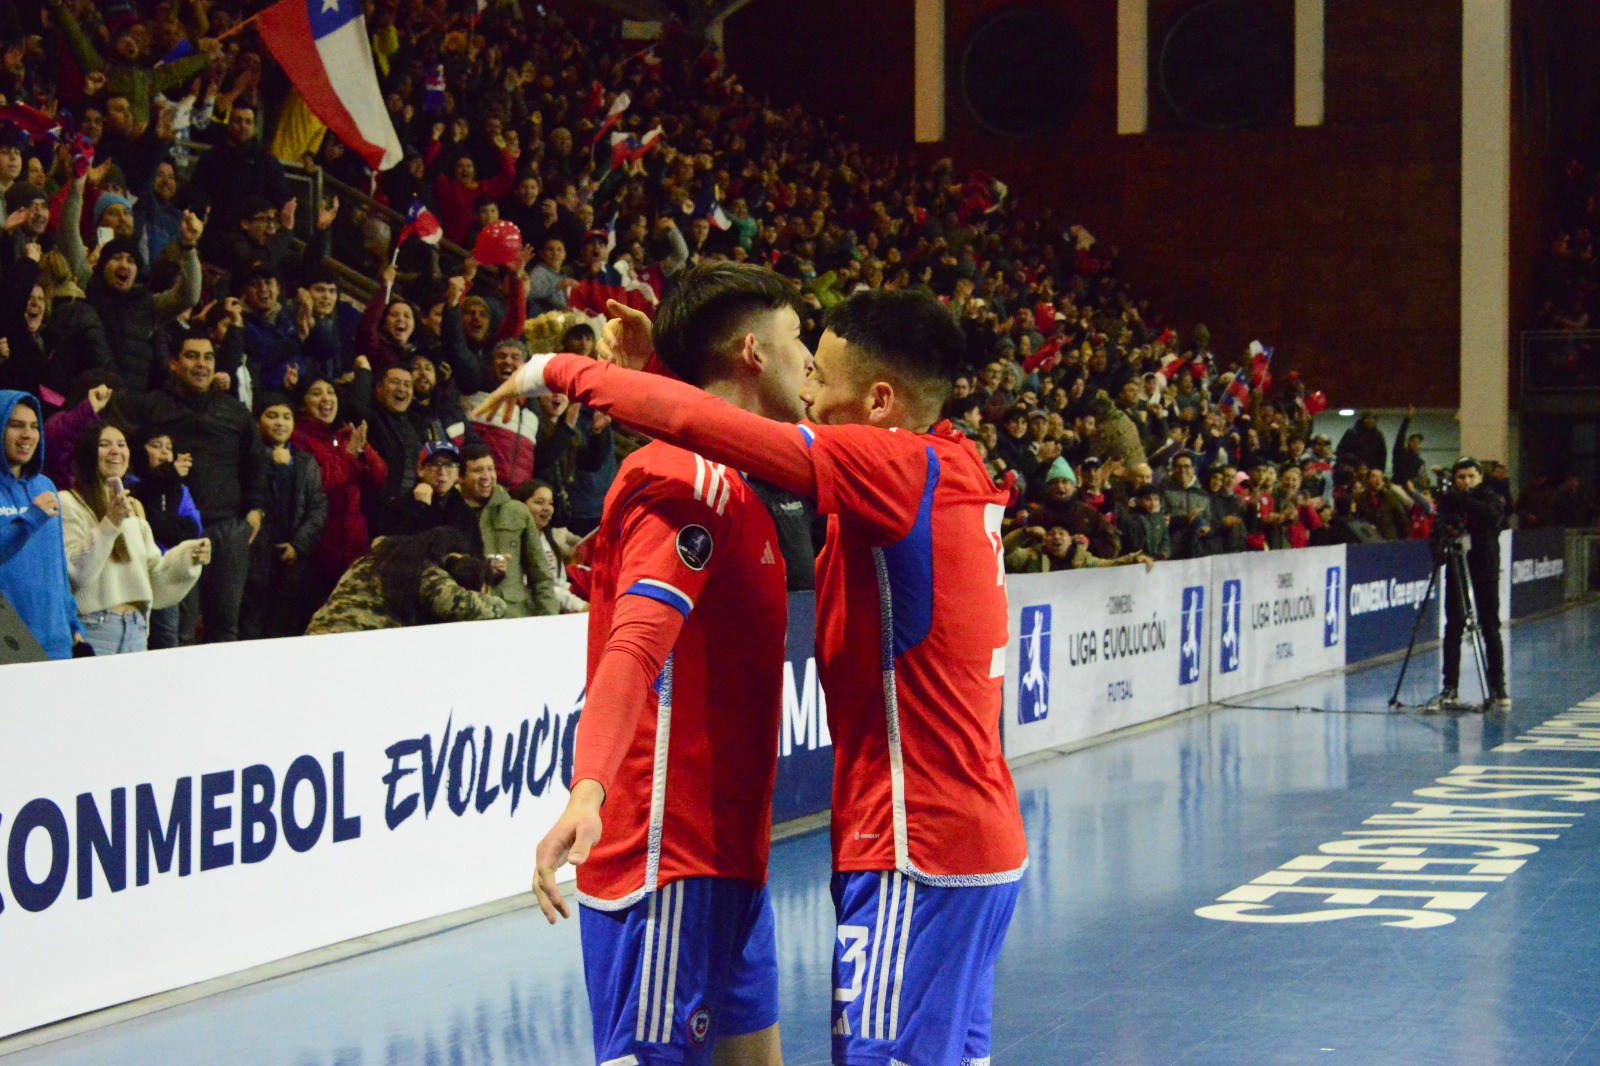 La selección chilena lo intentó pero no logró una diferencia de goles suficientes para ceñirse la corona de campeón / La Tribuna